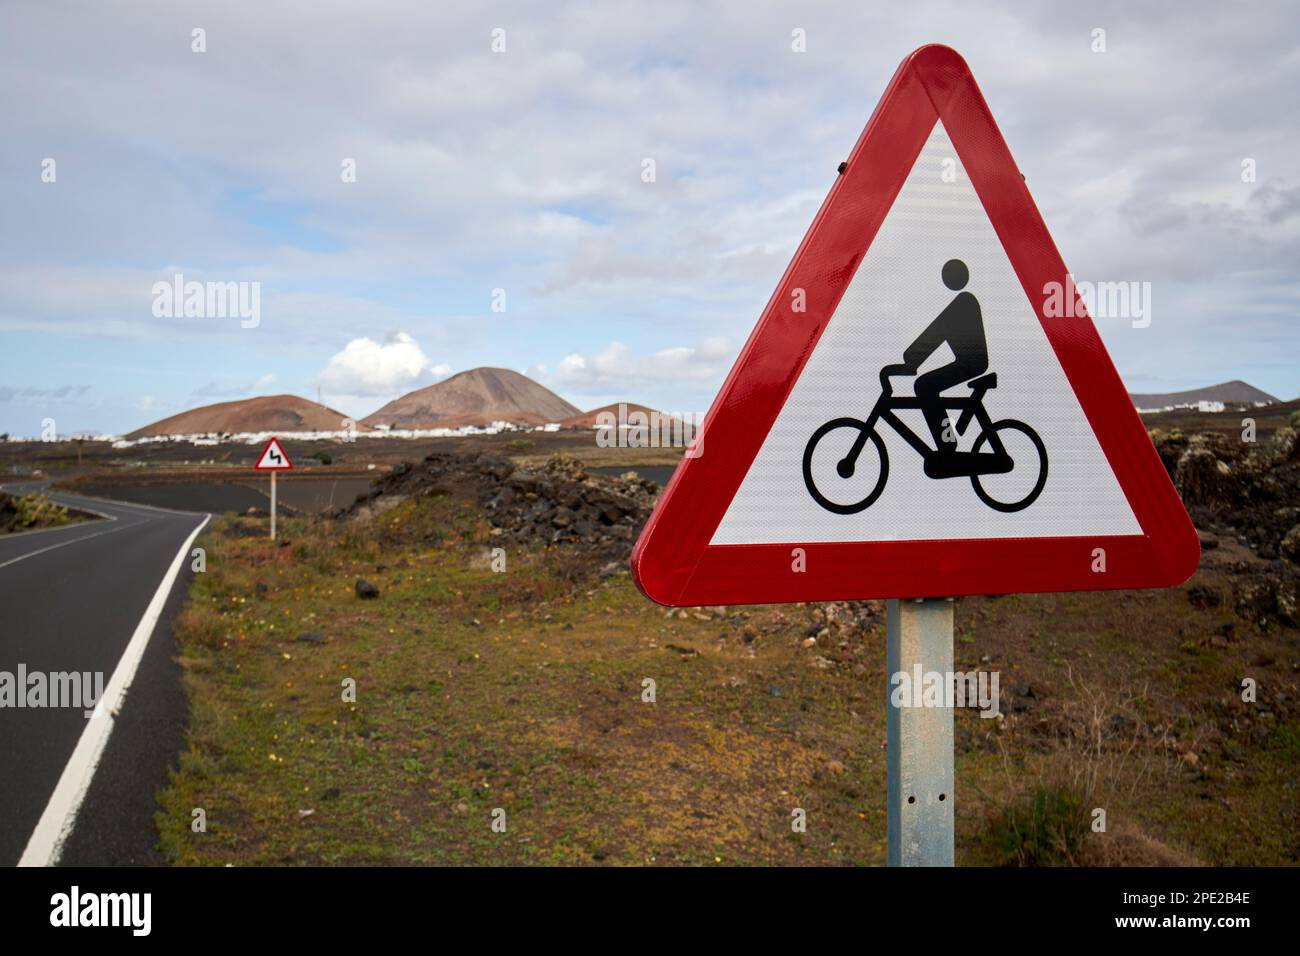 Avertissement pour les cyclistes sur une route à vélo dans la campagne de Lanzarote, îles Canaries, Espagne Banque D'Images